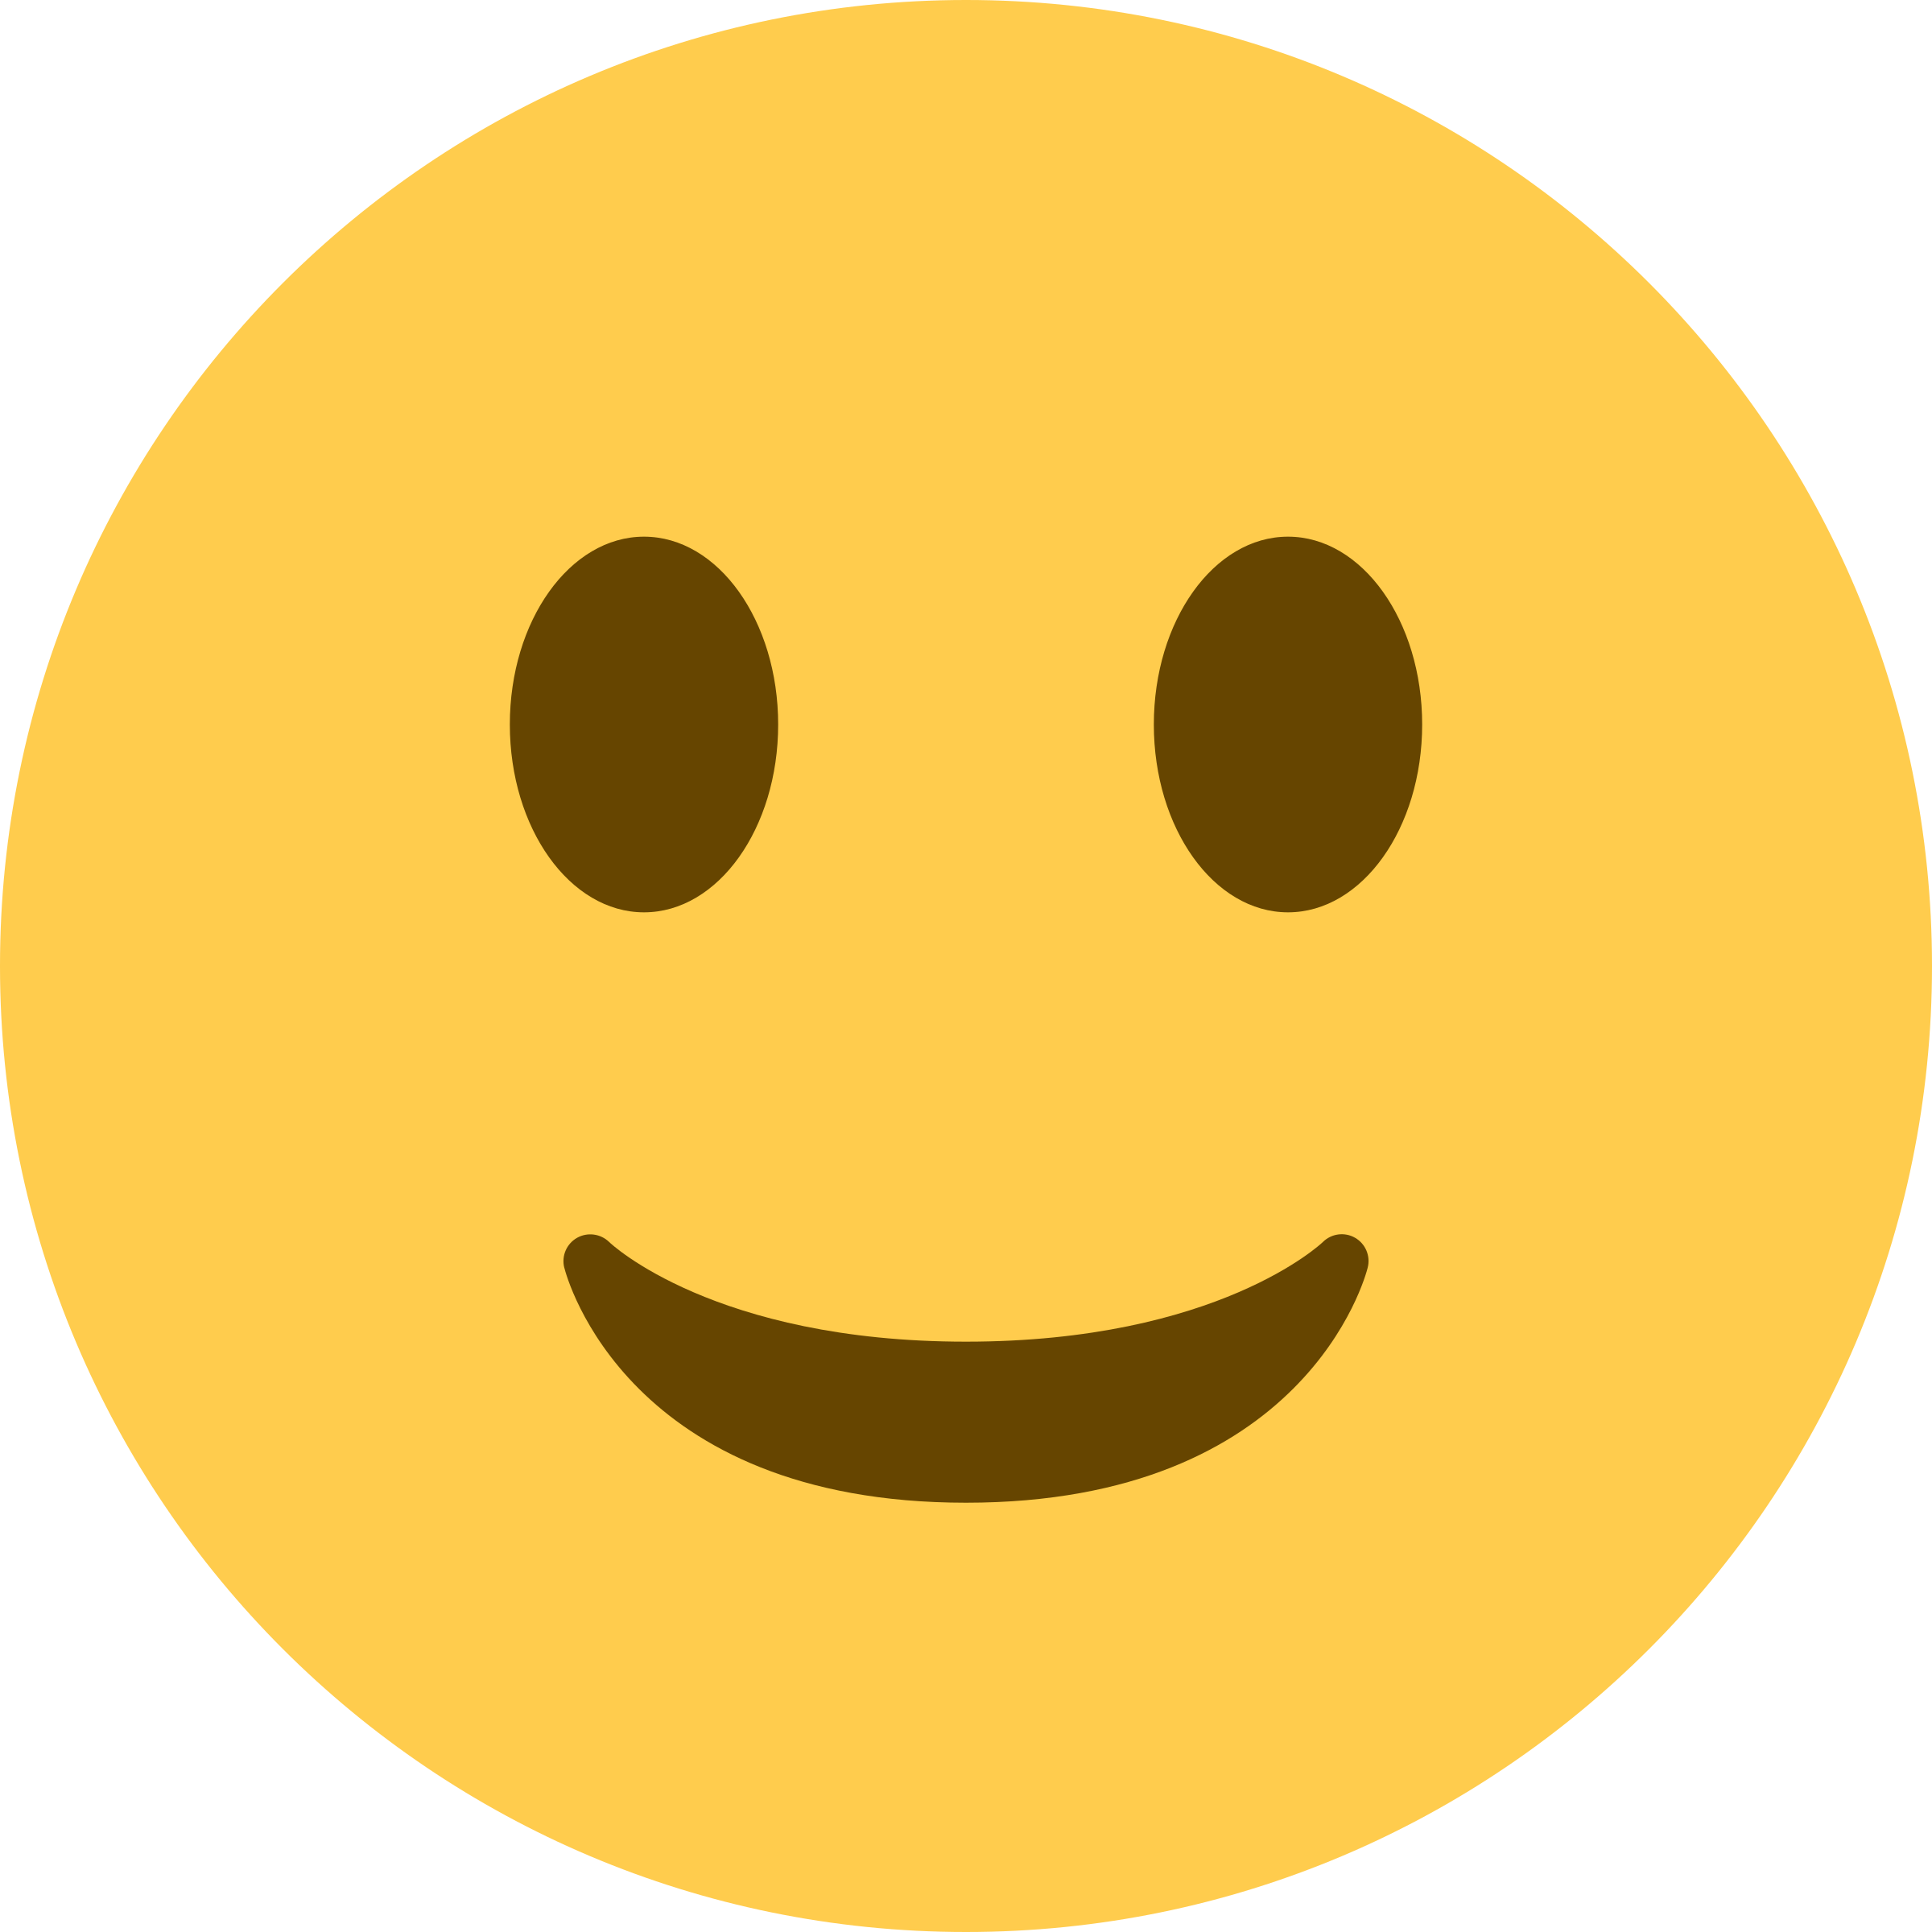 Tawa emoji PNG image